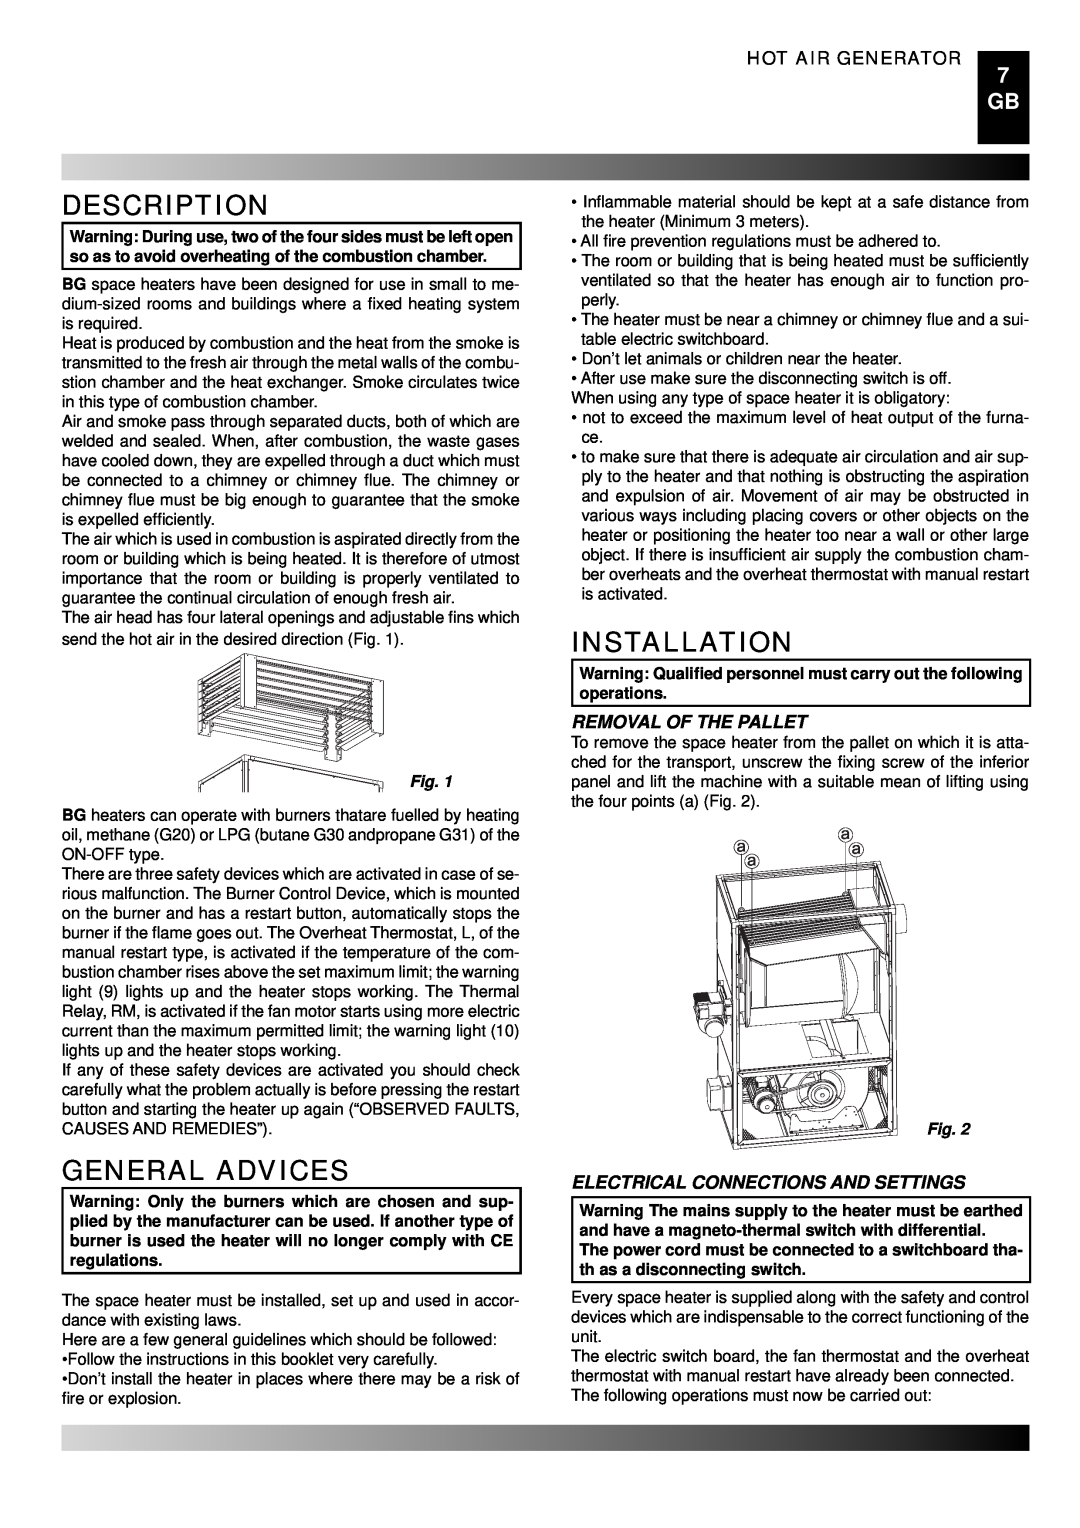 Master Lock BG 150, BG 100, BG 200 Description, General Advices, Installation, Hot Air Generator, Removal Of The Pallet 